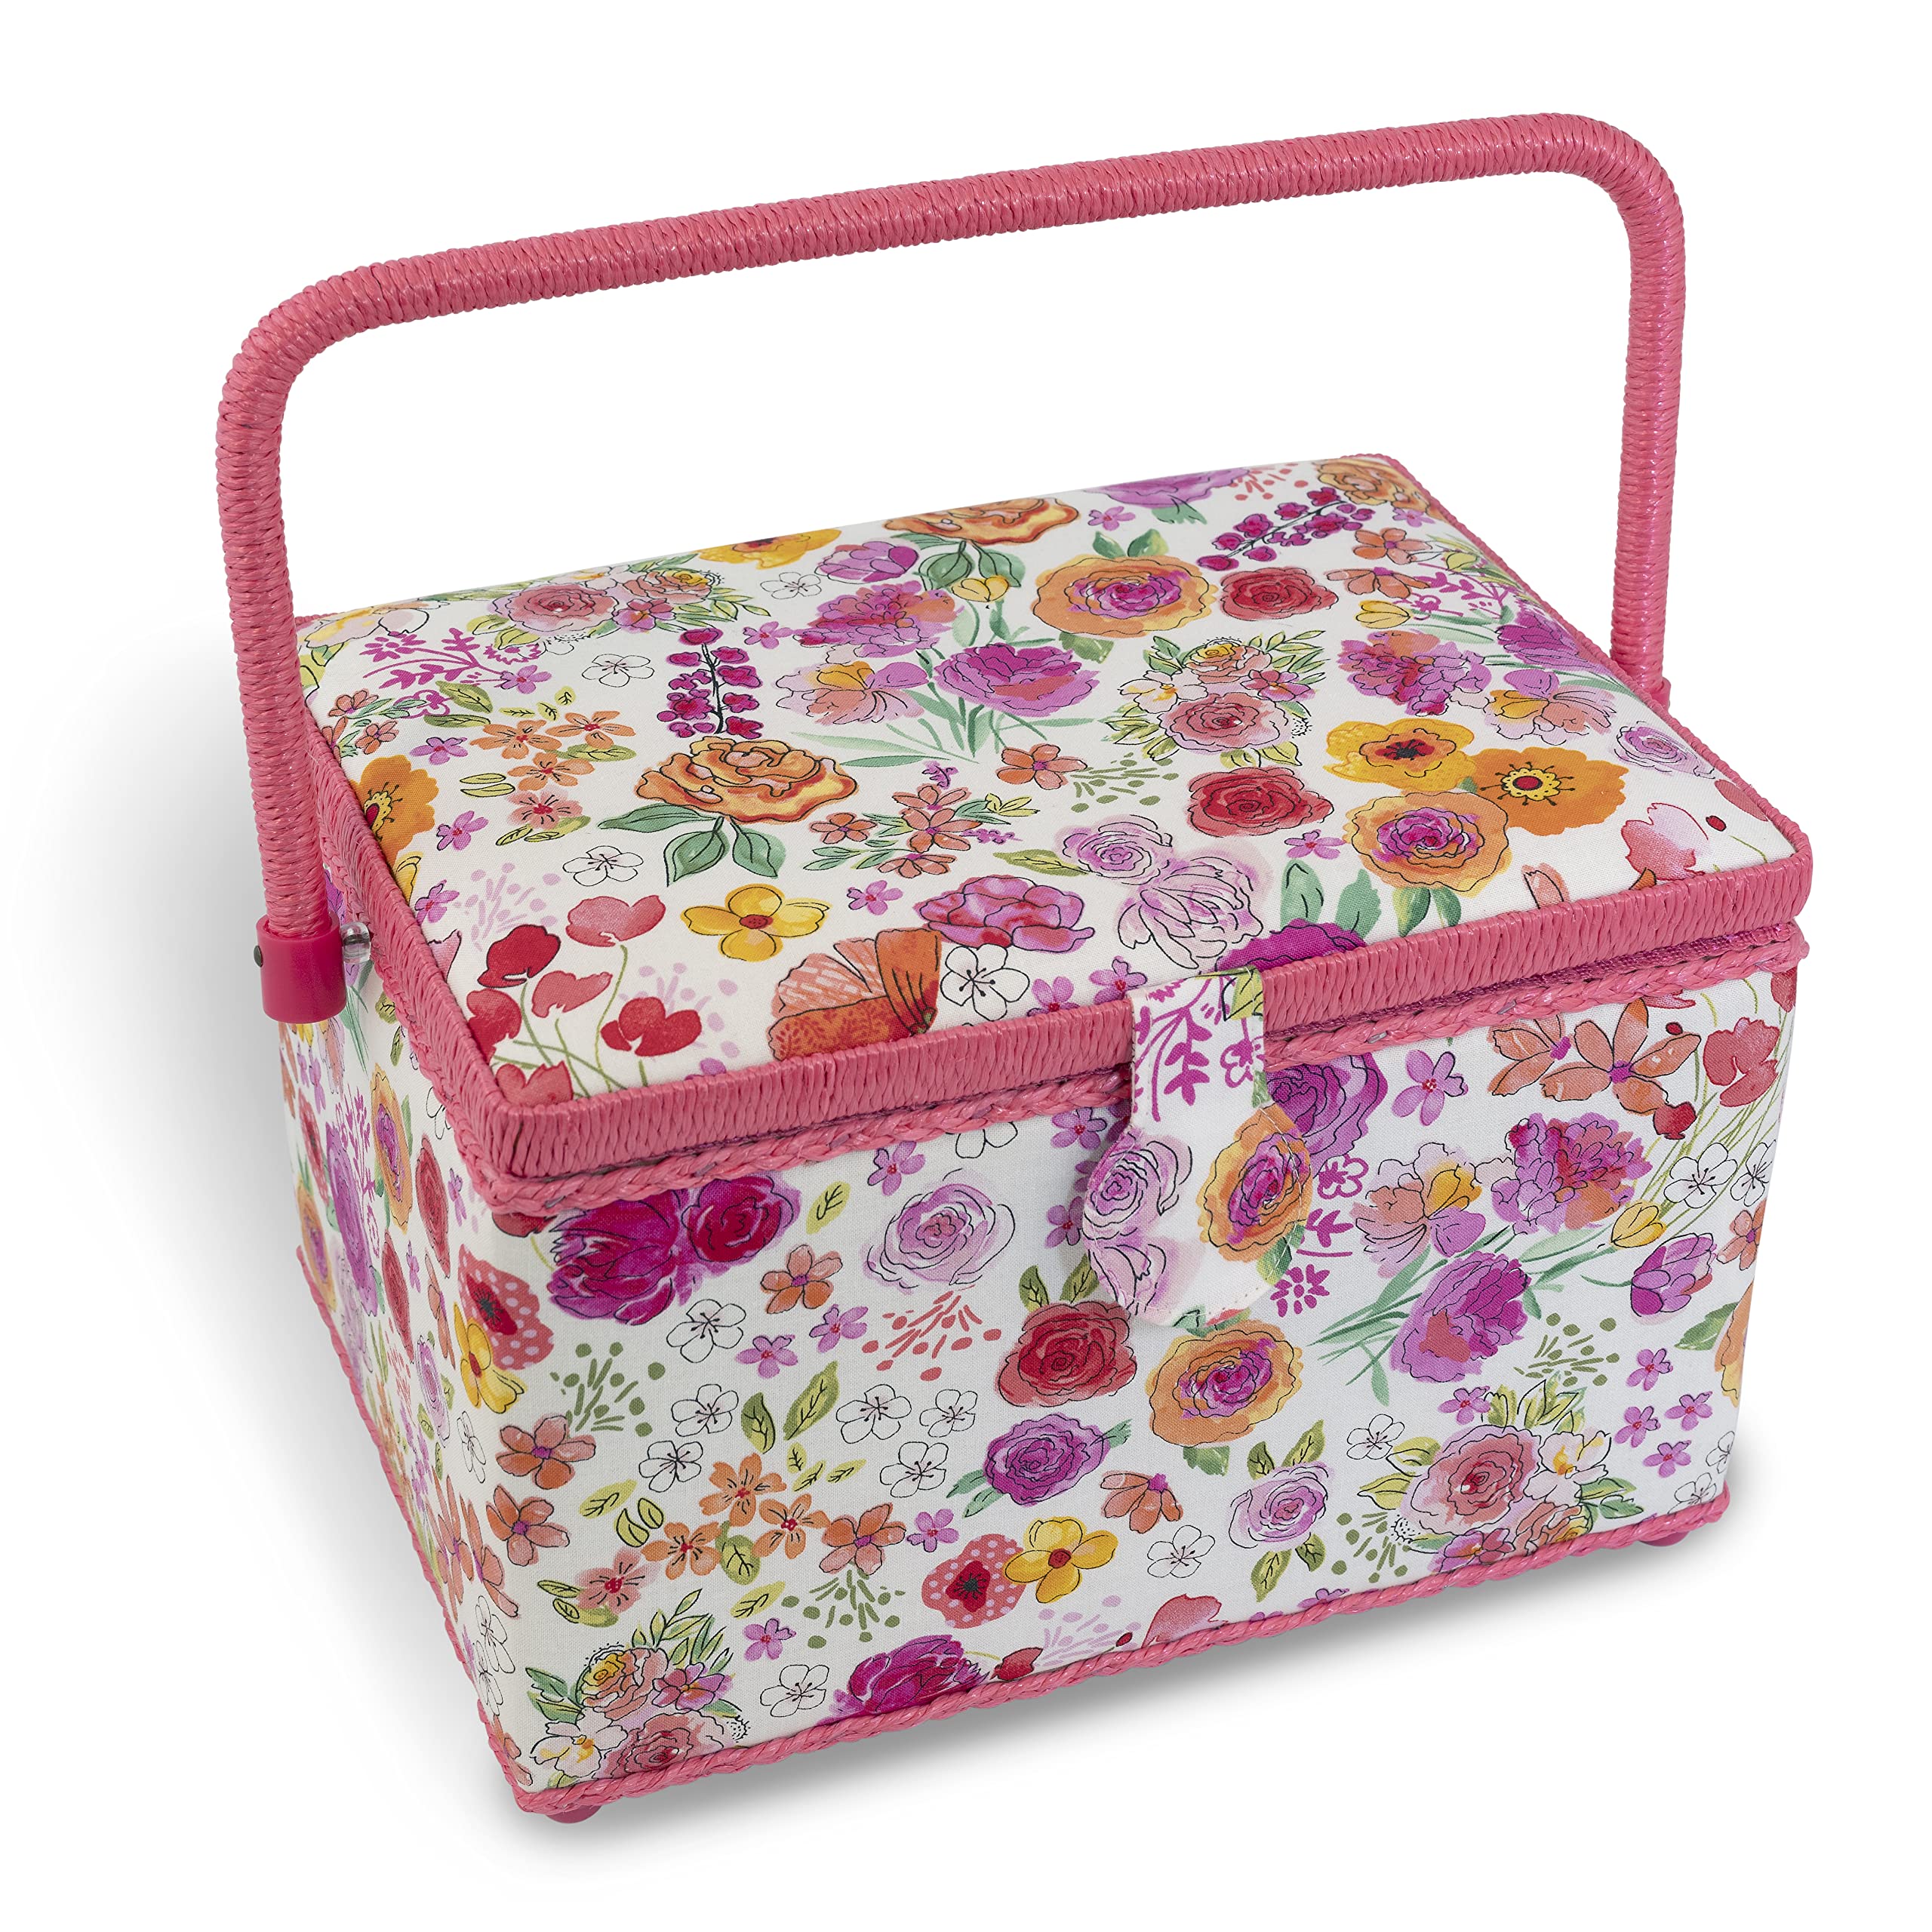 Dritz Large Kit Filled Sewing Basket, Pink & Orange